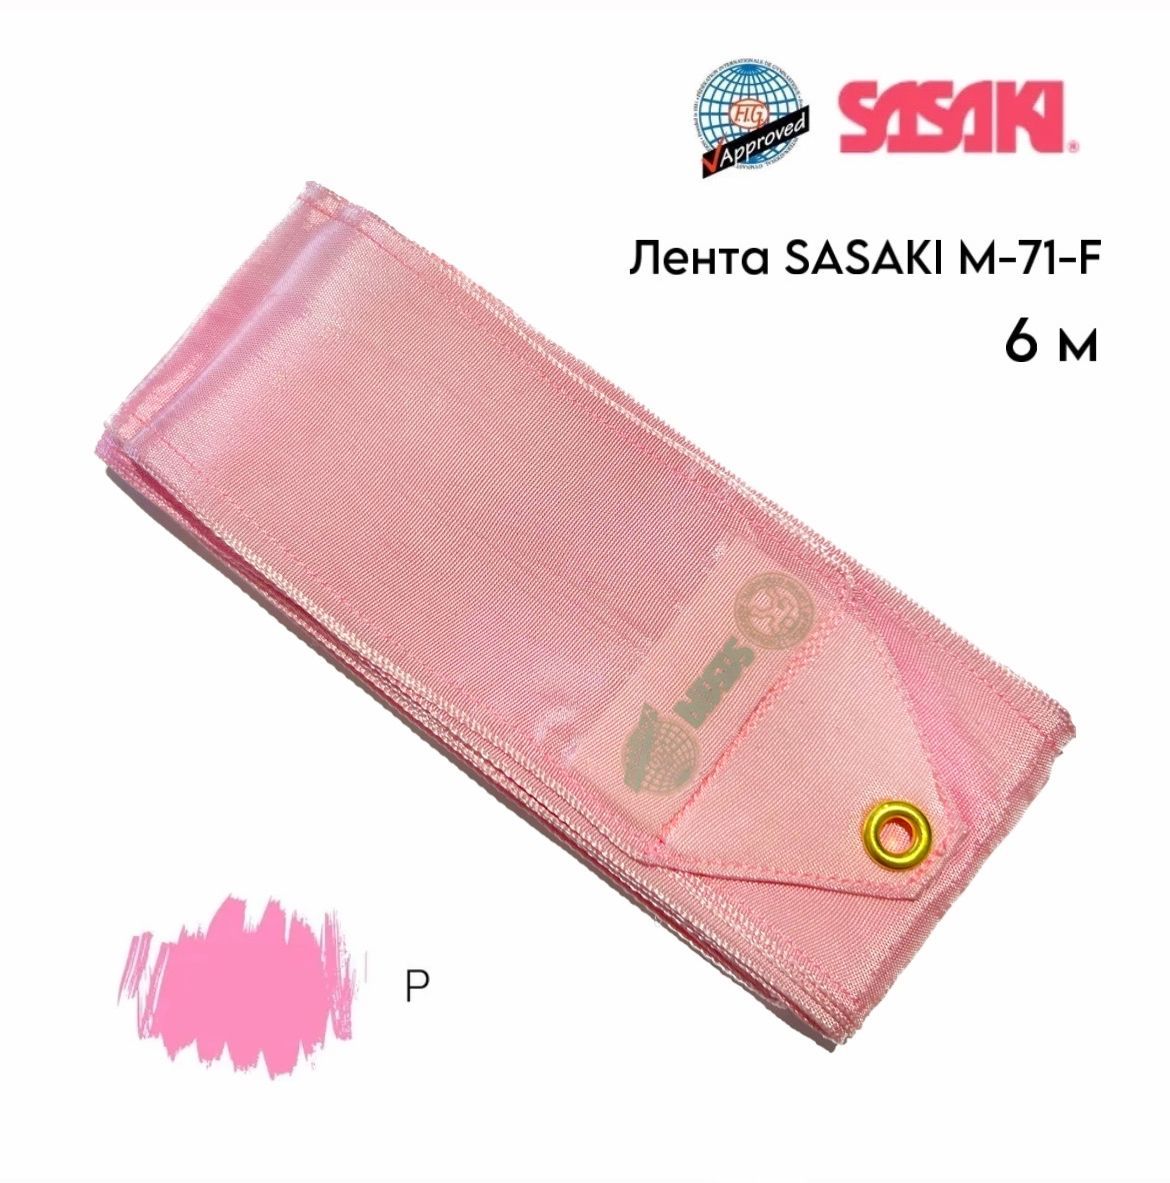 Лента Sasaki 6 м м 71- Fig однотонная (CYP ярко-розовая). Лента Сасаки. Футляр для палочки Sasaki m-753. Лента Сасаки AG 024. Лента сасаки купить